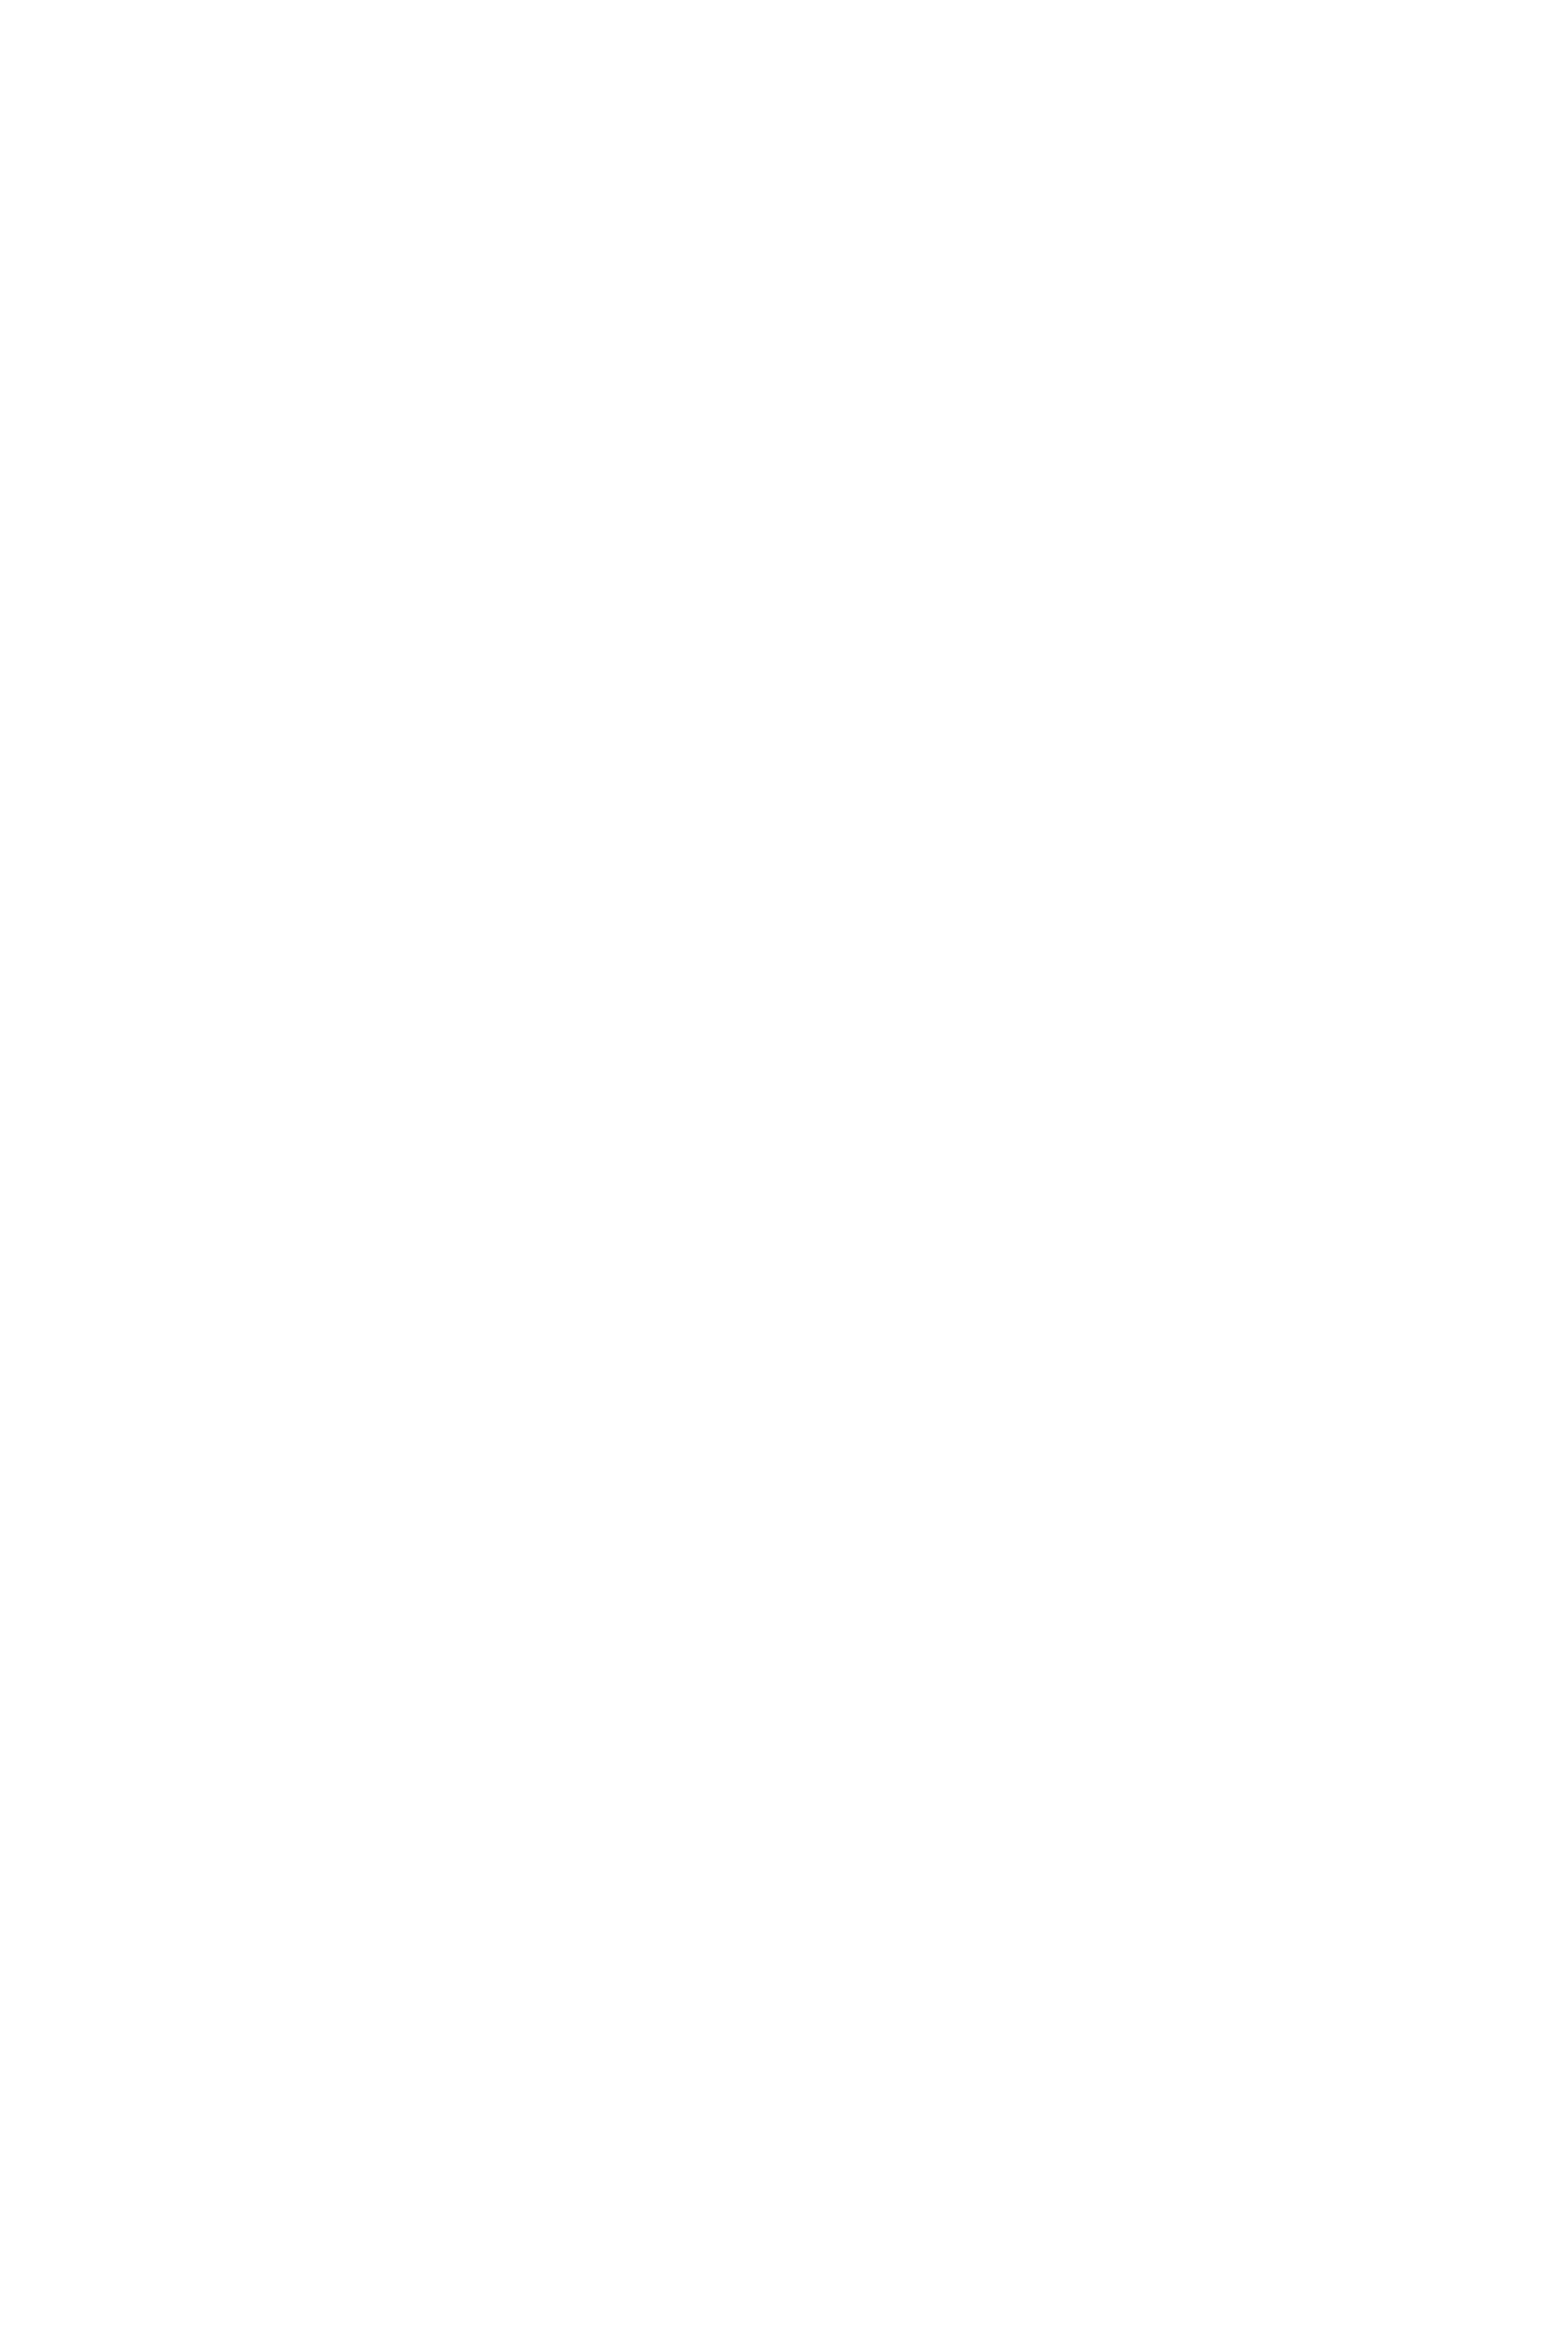 Укладка крупноформатного керамогранита в санузеле